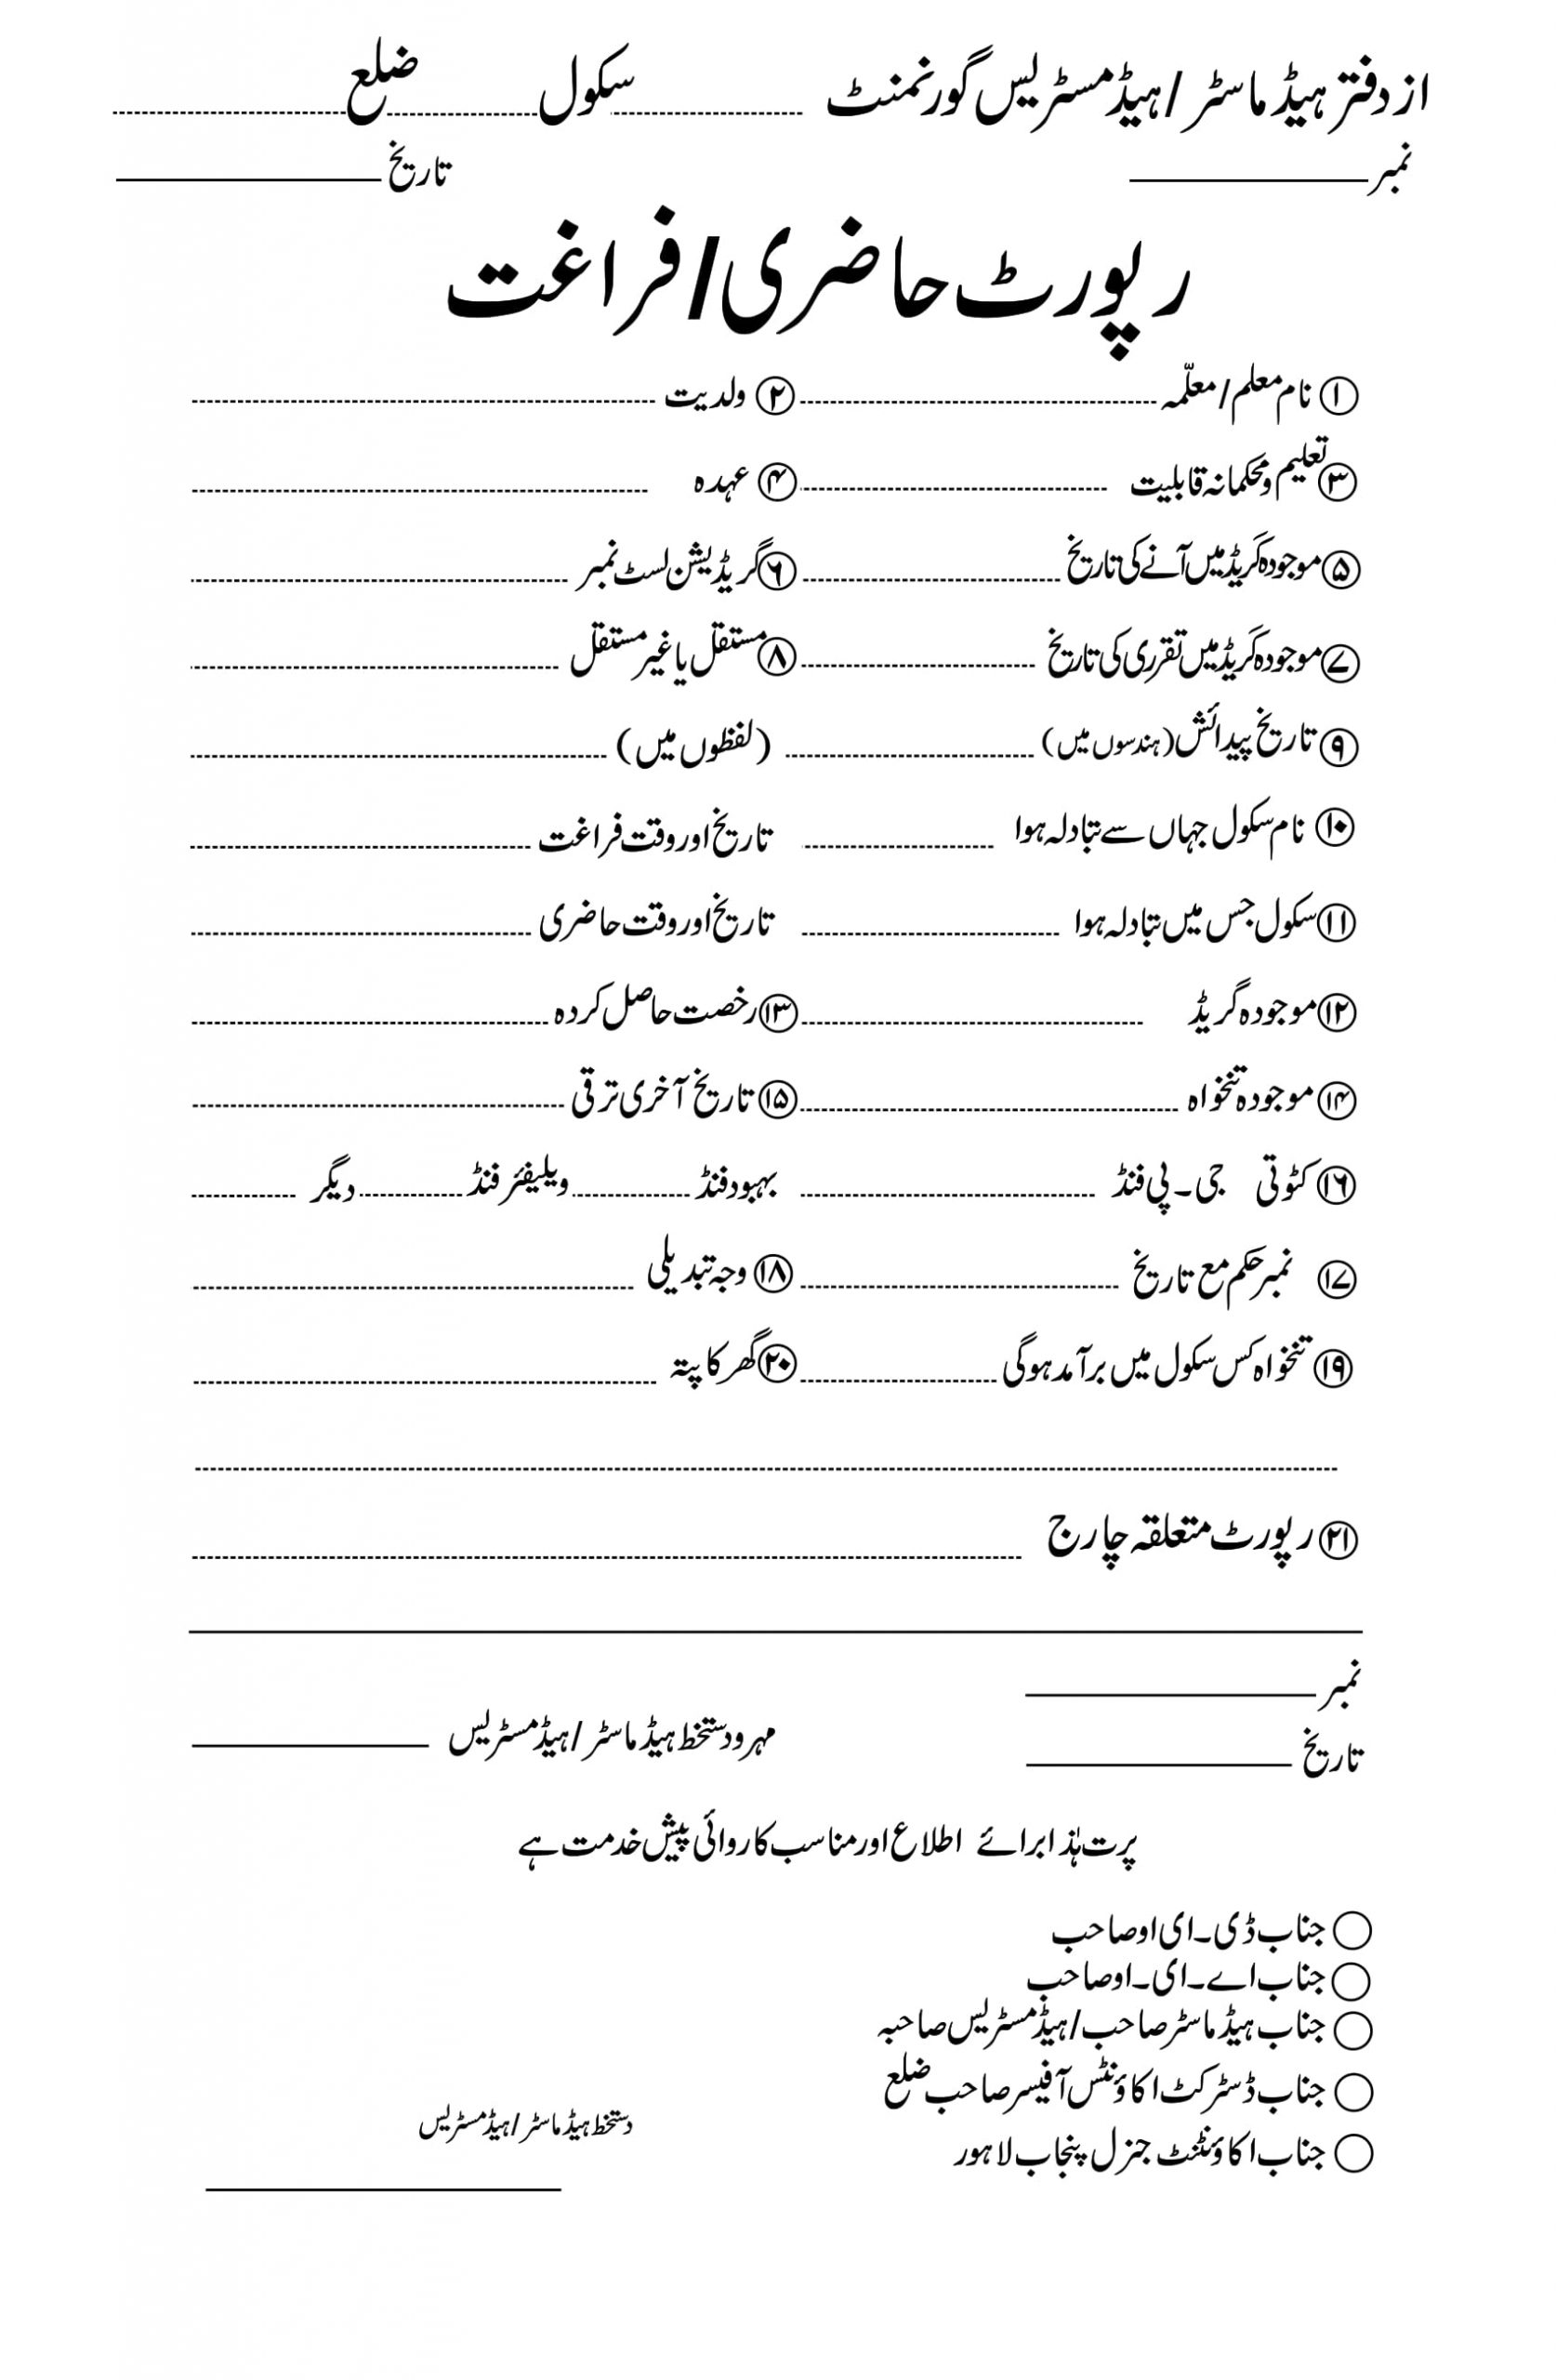 technical report writing in urdu